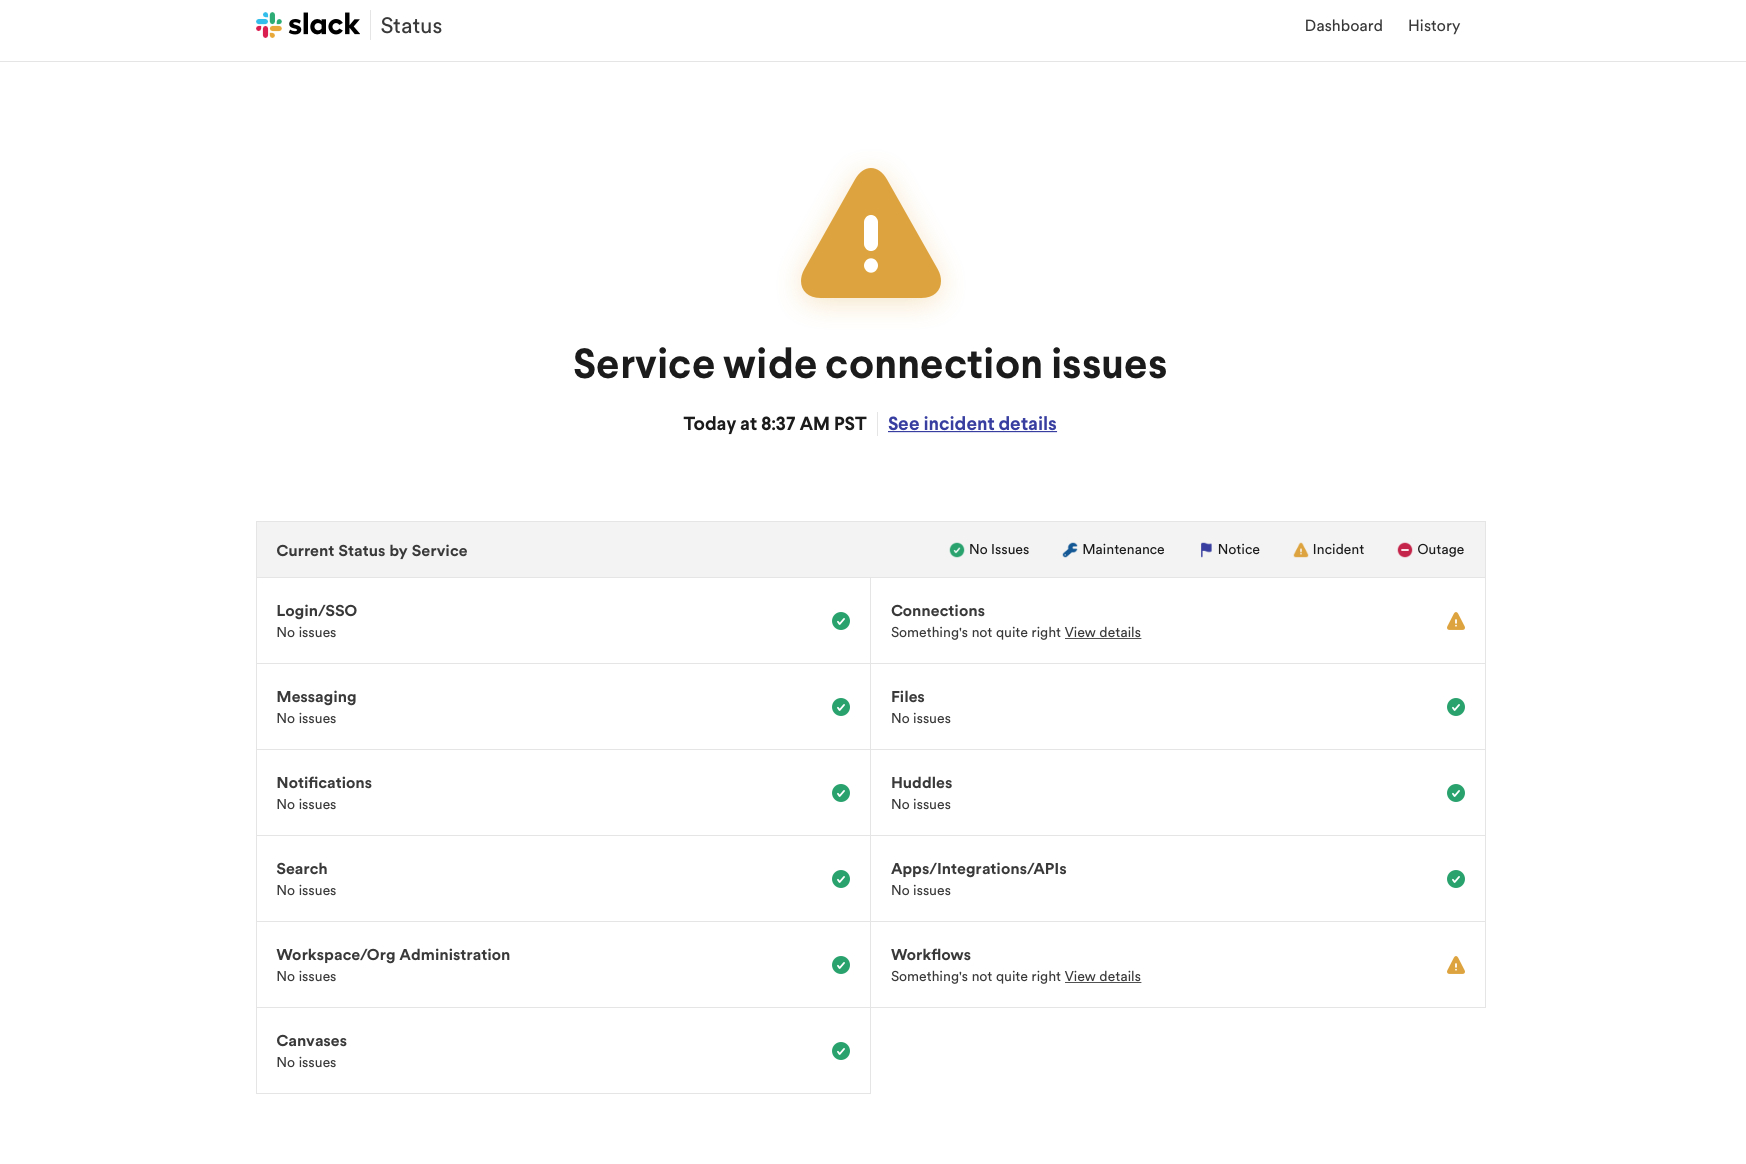 تصویری از وب سایت Slack Status که مشکلات مربوط به اتصالات و گردش کار را نشان می دهد.